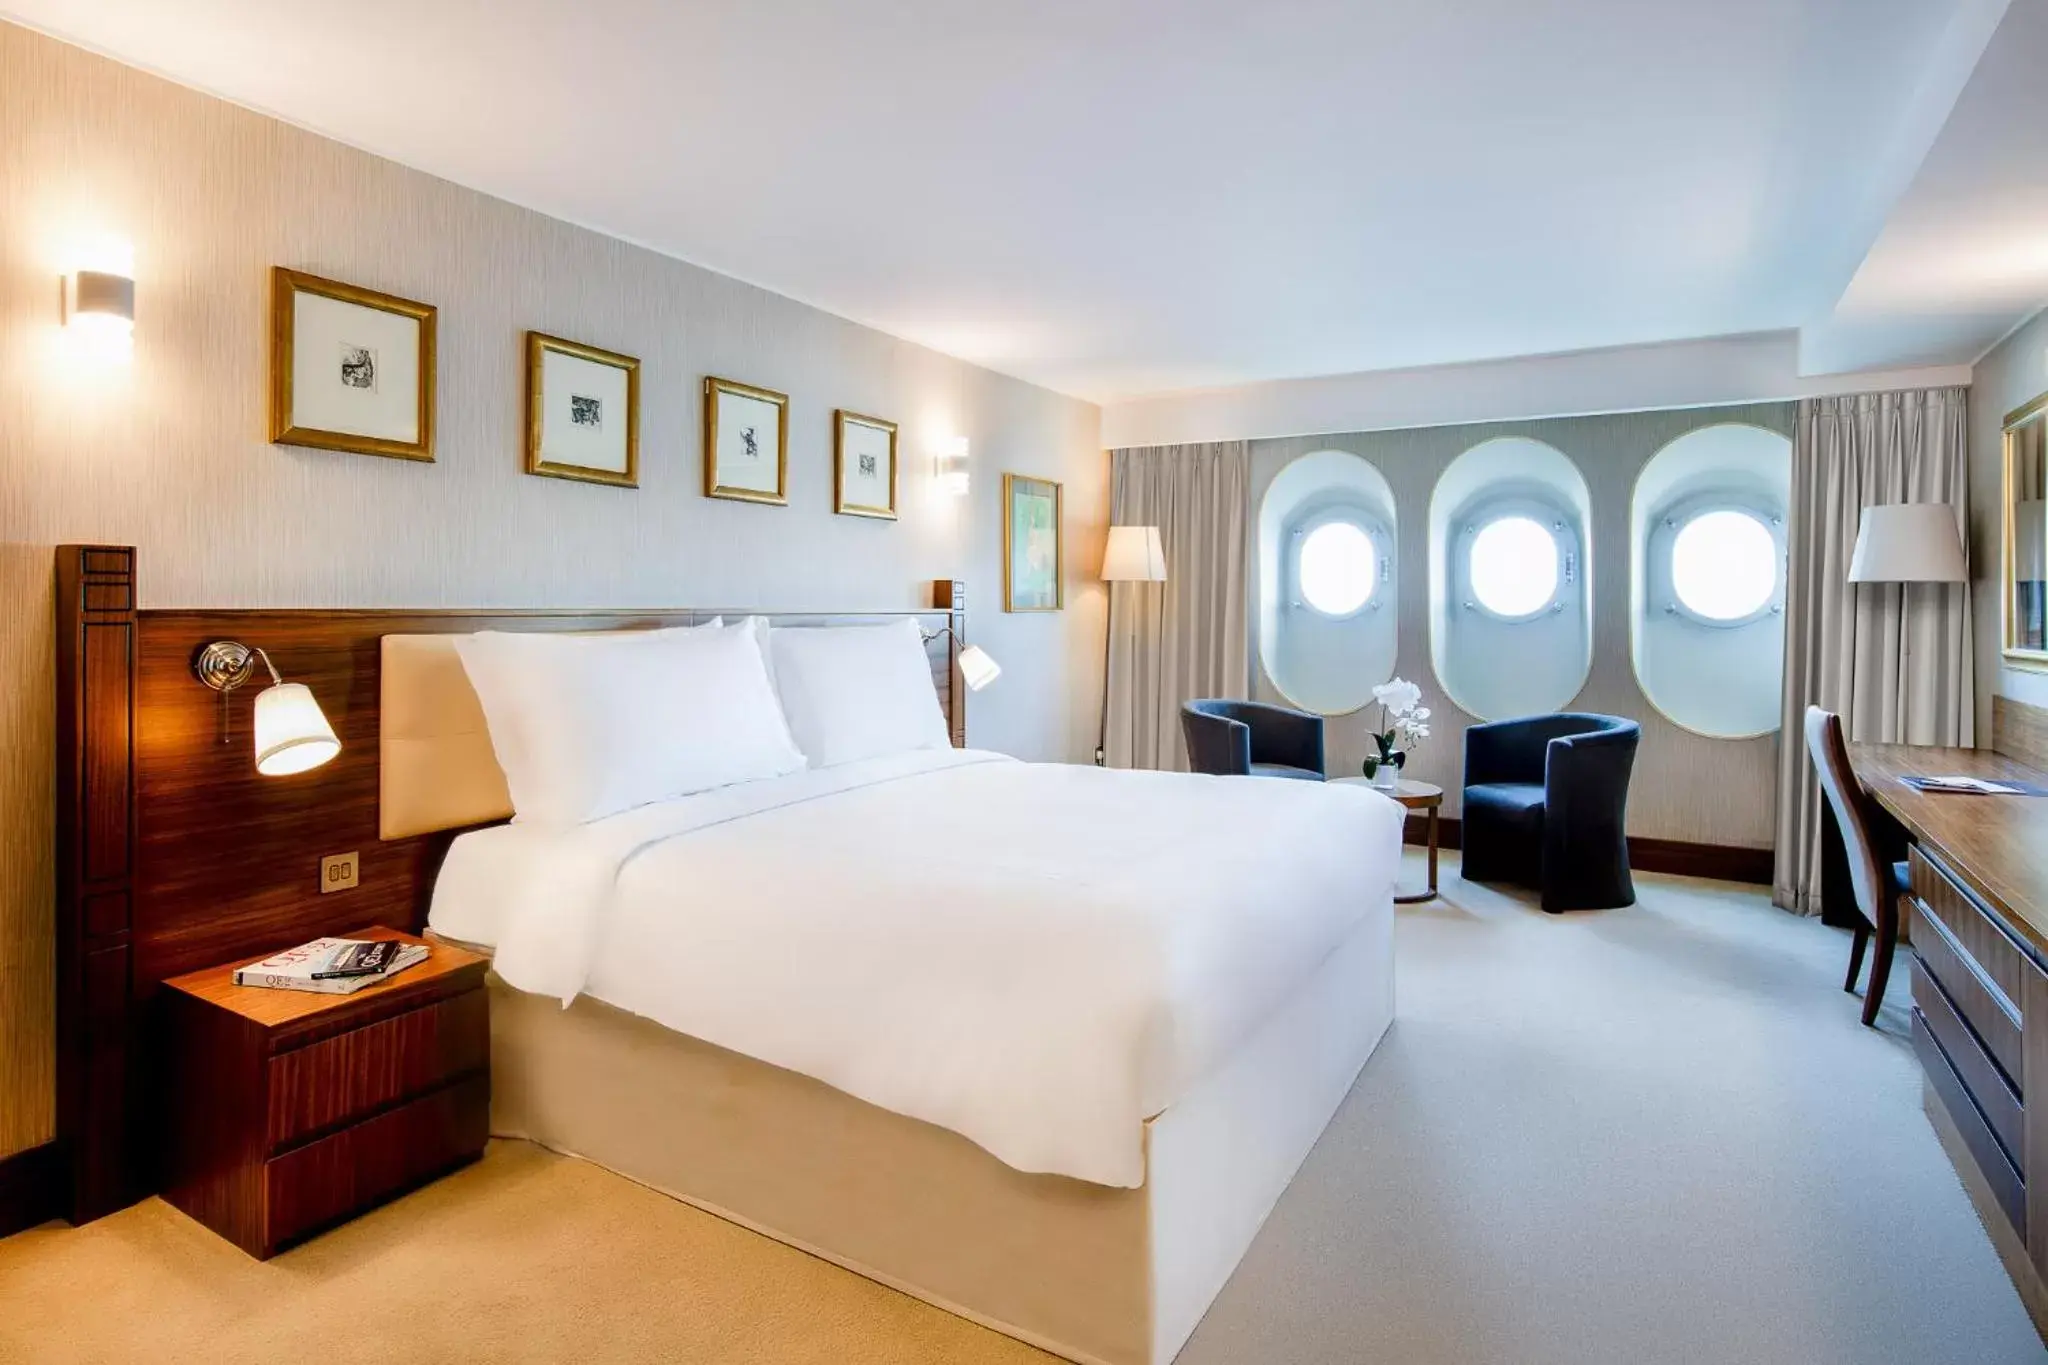 Bedroom, Bed in Queen Elizabeth 2 Hotel